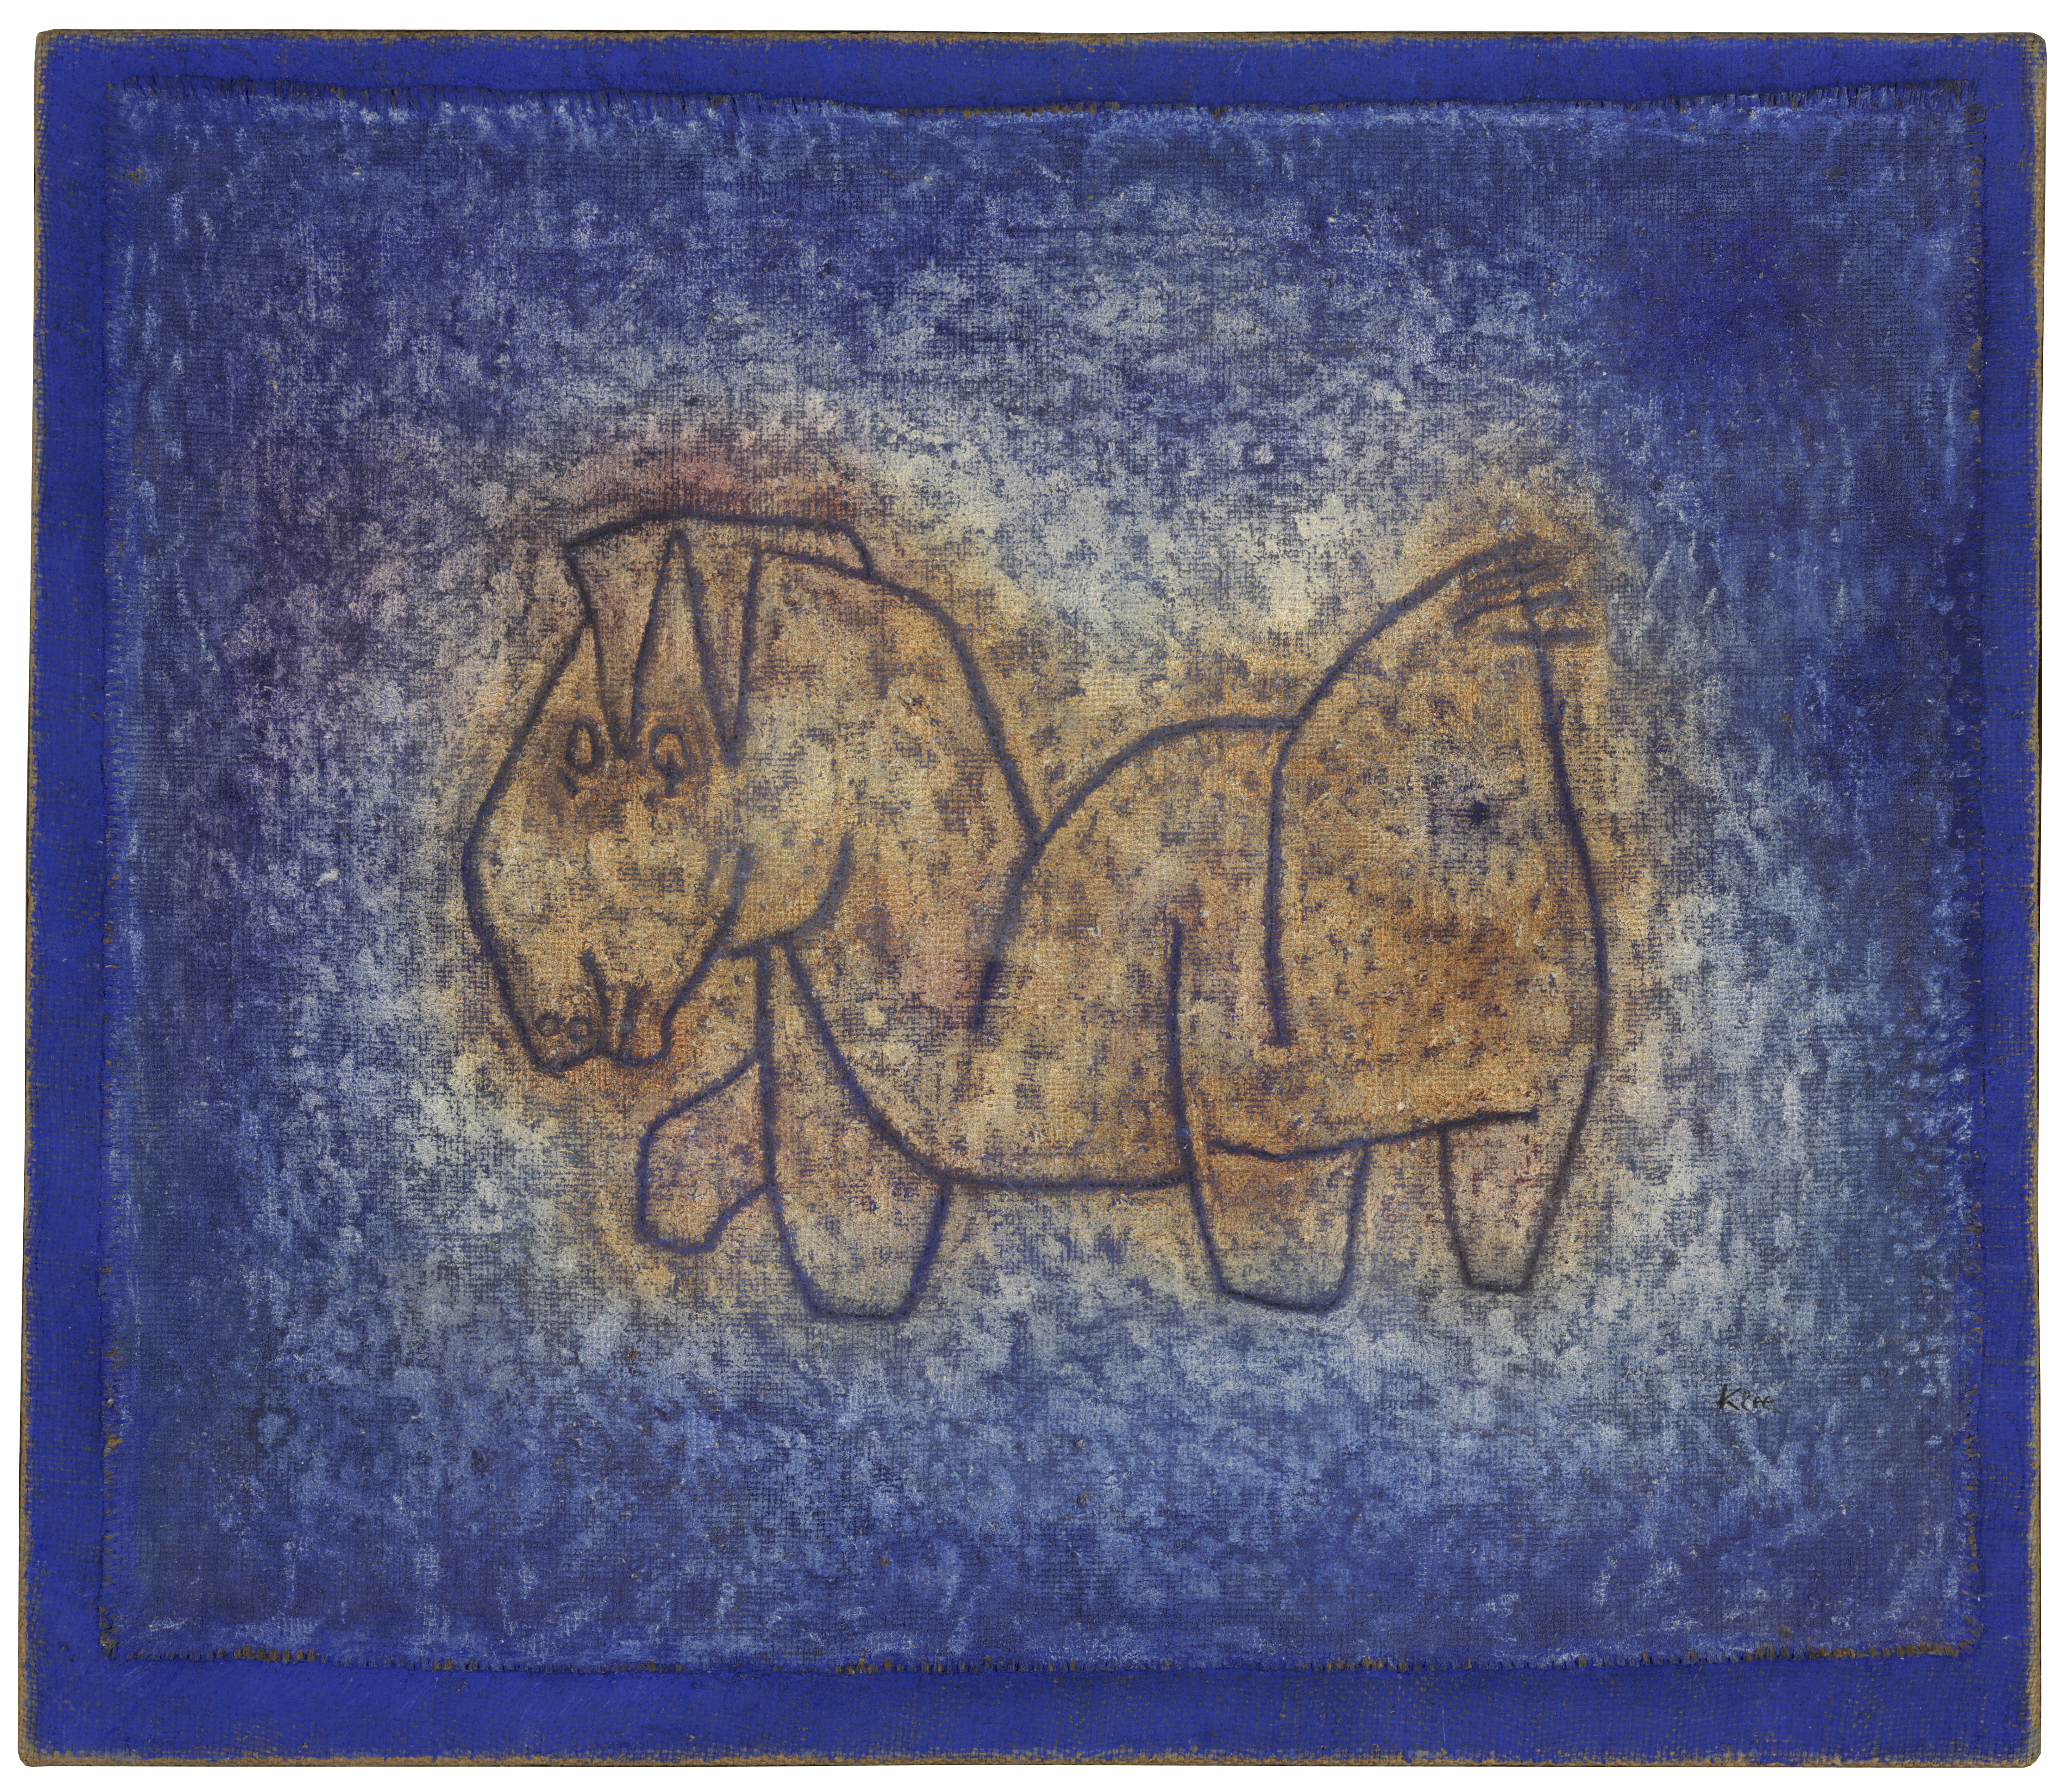 Paul Klee, entre-mondes